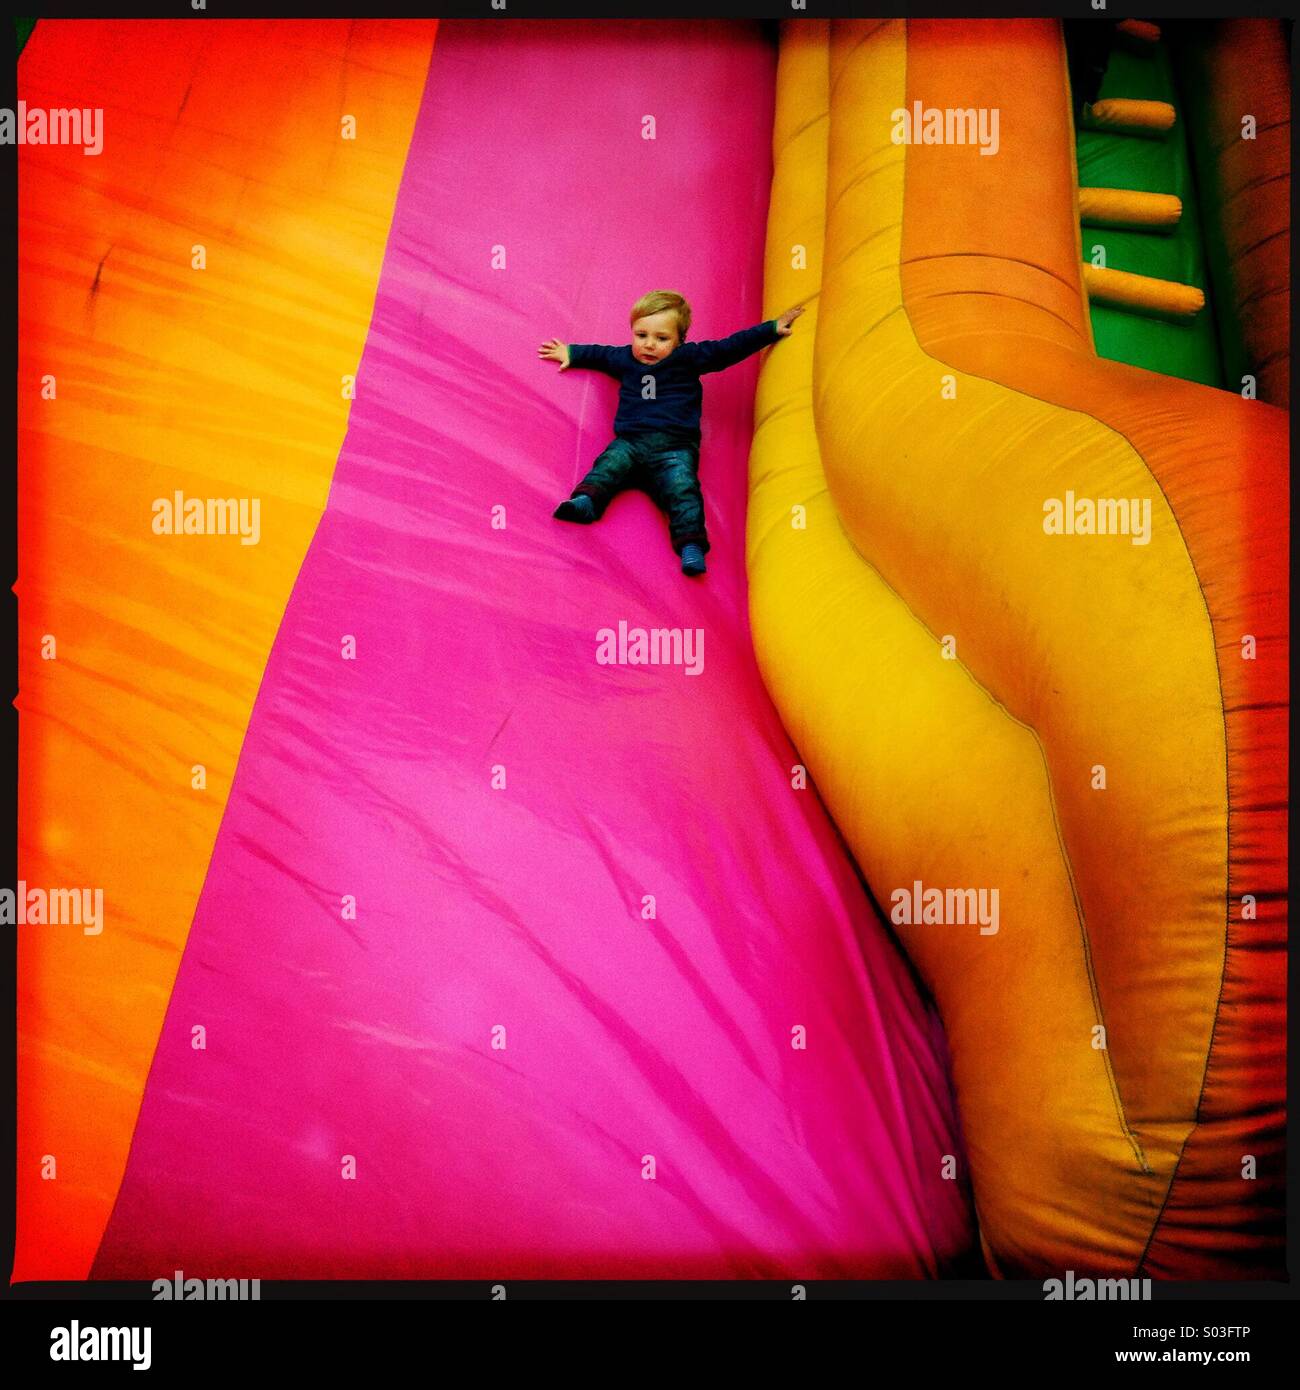 Un jeune garçon de deux ans faisant glisser vers le bas à une diapositive gonflable but fun fair. L'enfant est montrant un certain degré de peur. Banque D'Images